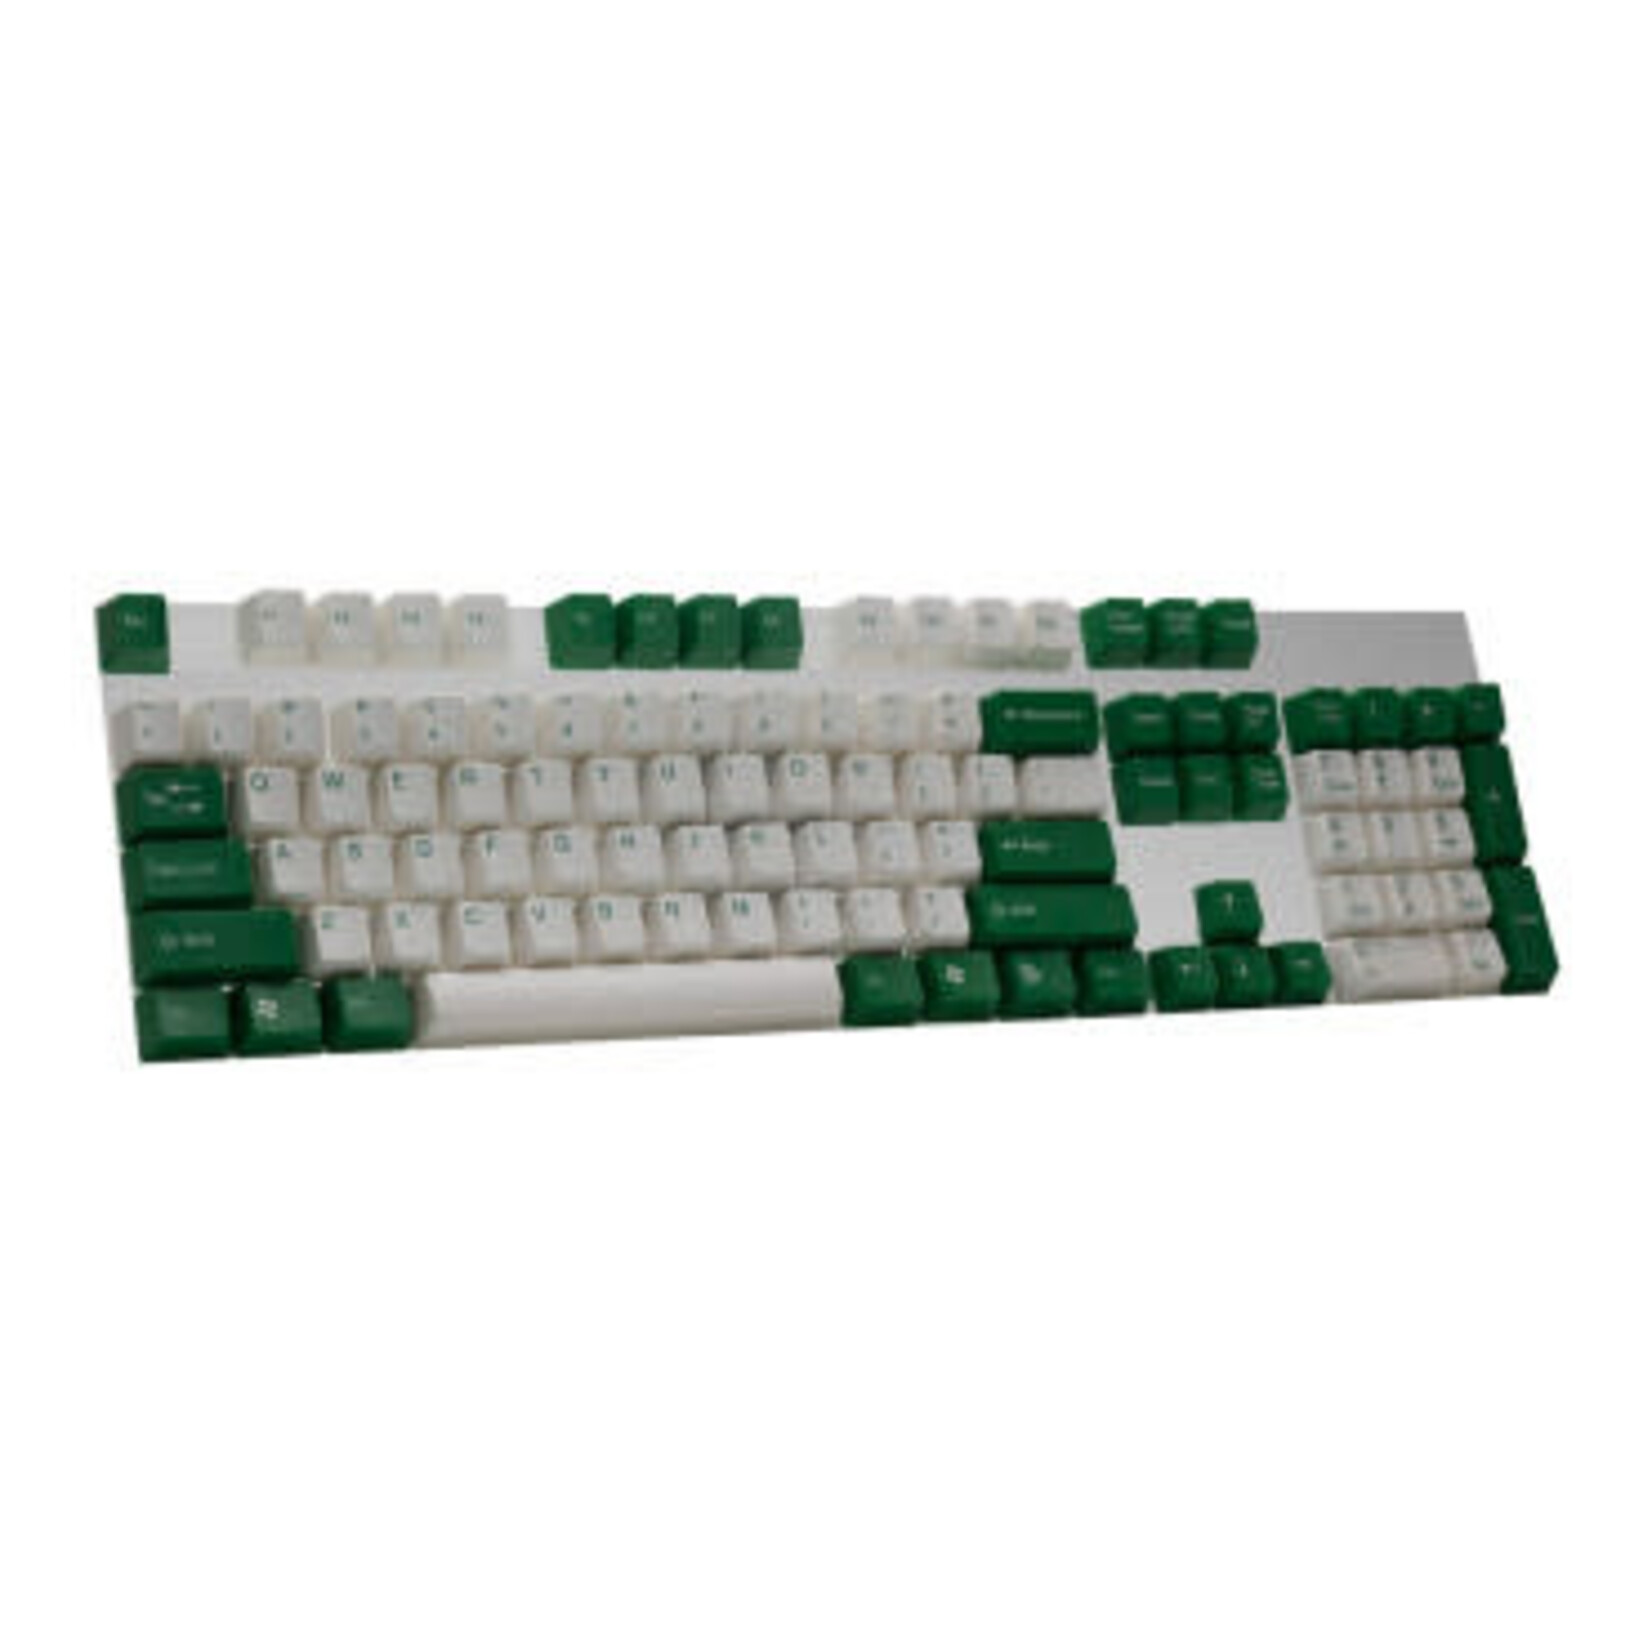 Tai-Hao Tai-Hao White and Green ABS Keycap Set